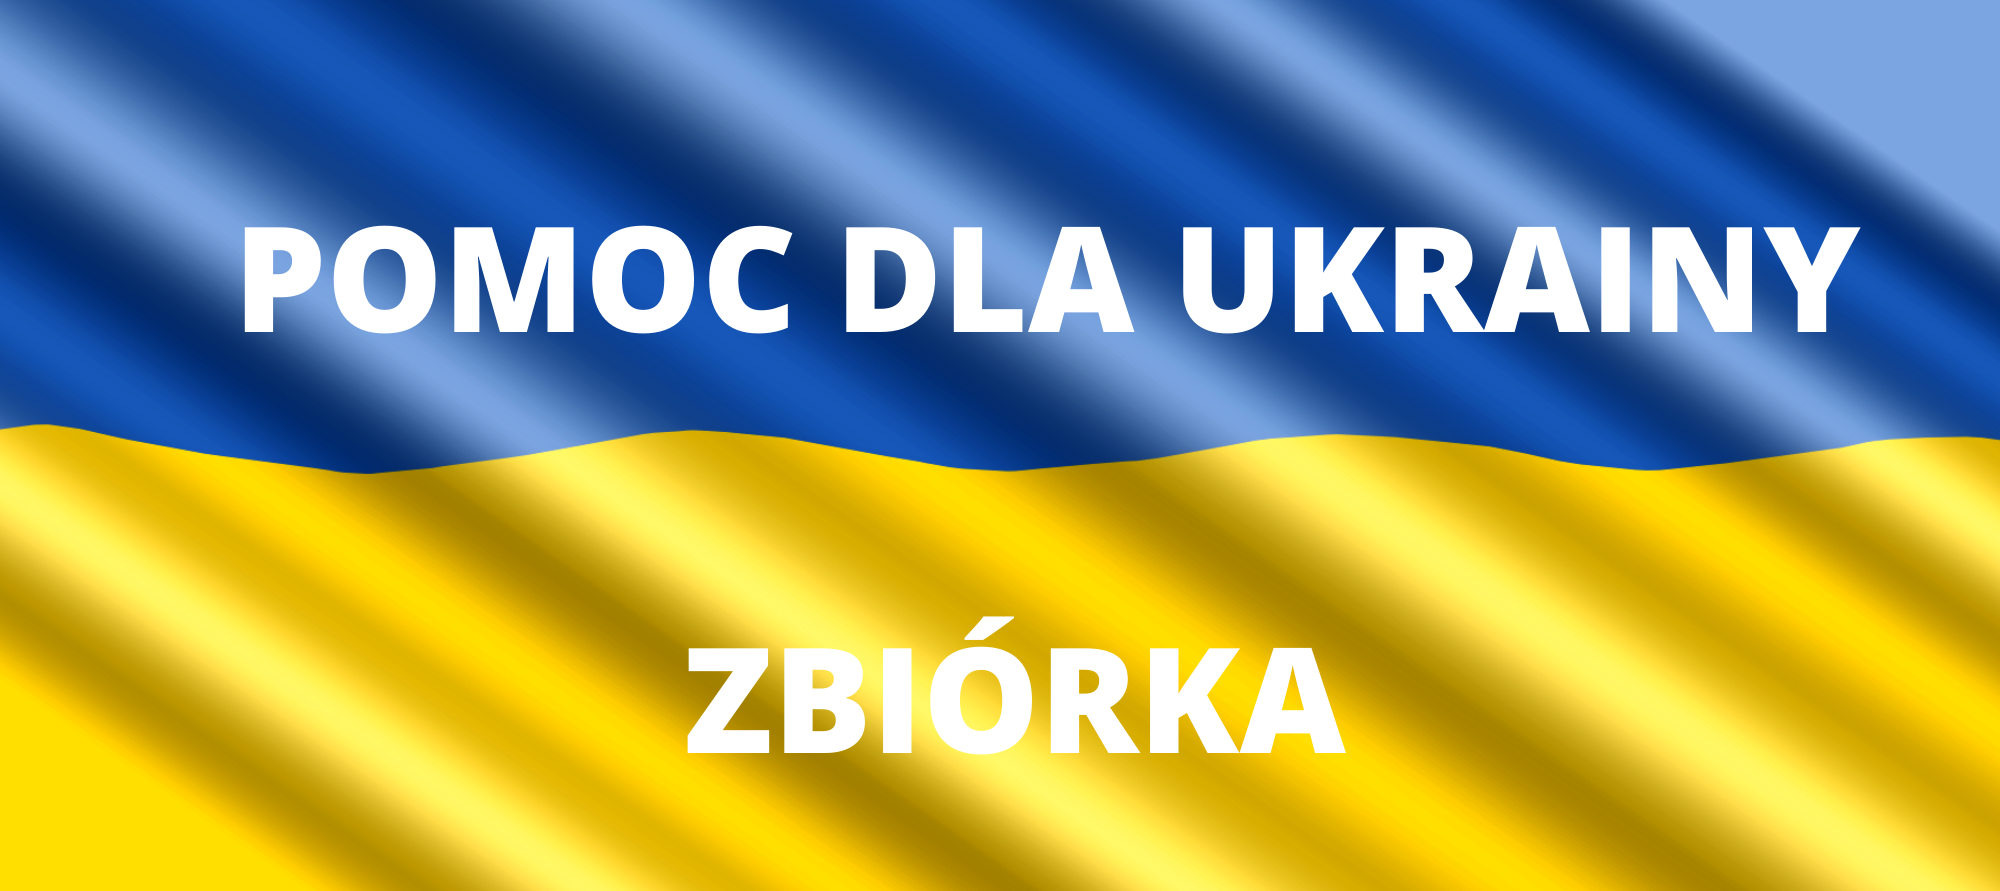 POMOC-DLA-UKRAINY.png